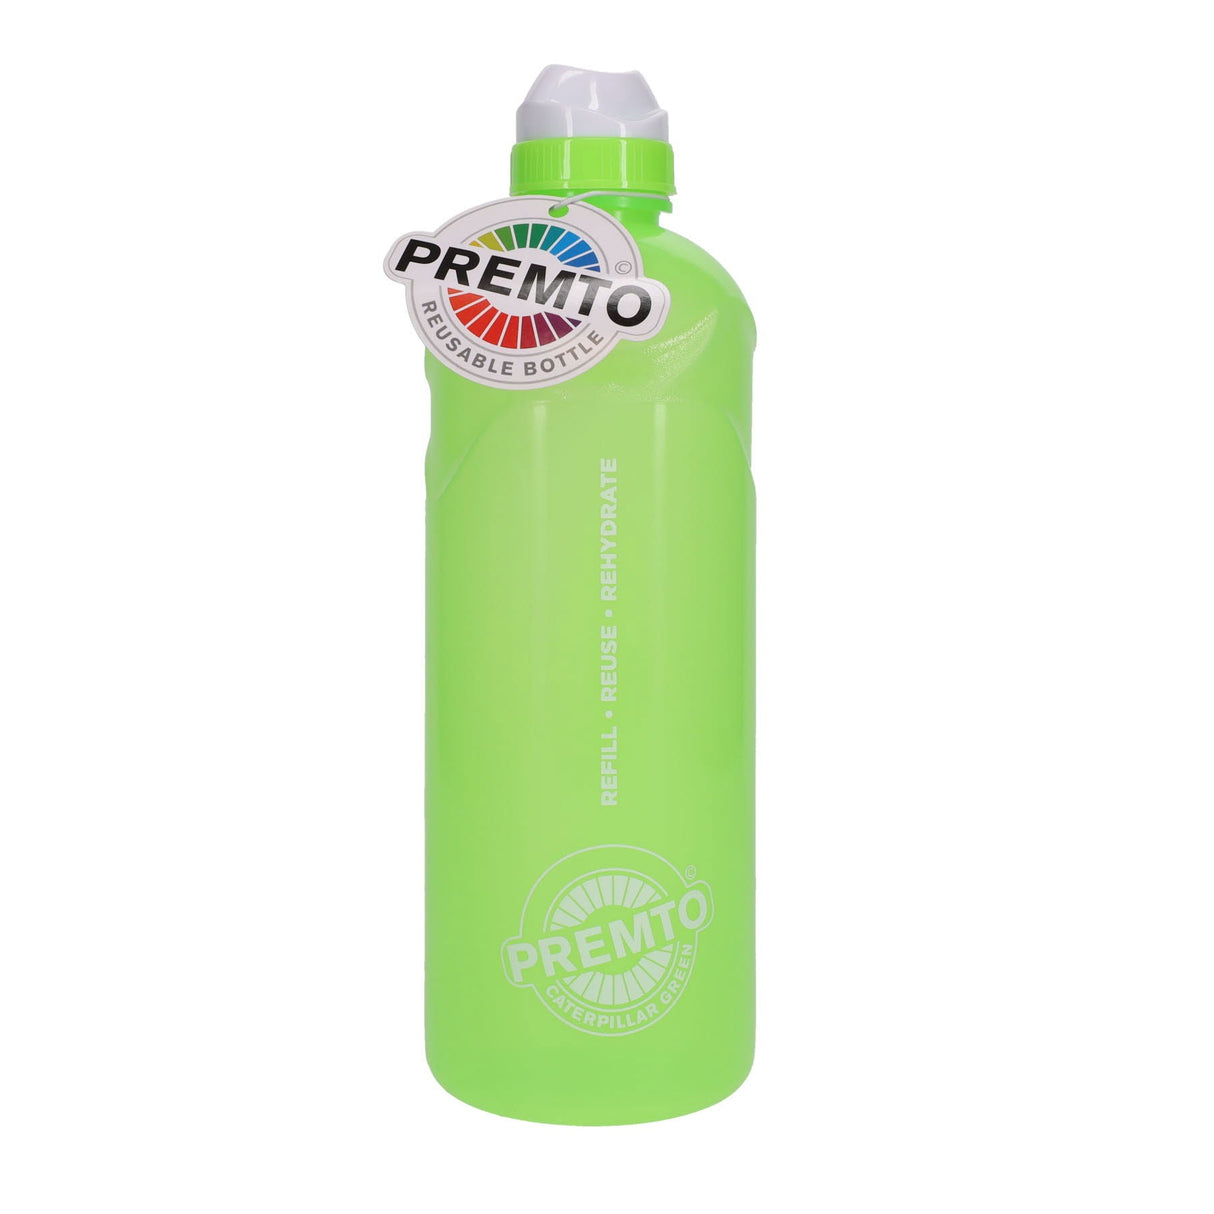 Premto 1 Litre Stealth Bottle - Caterpillar Green | Stationery Shop UK